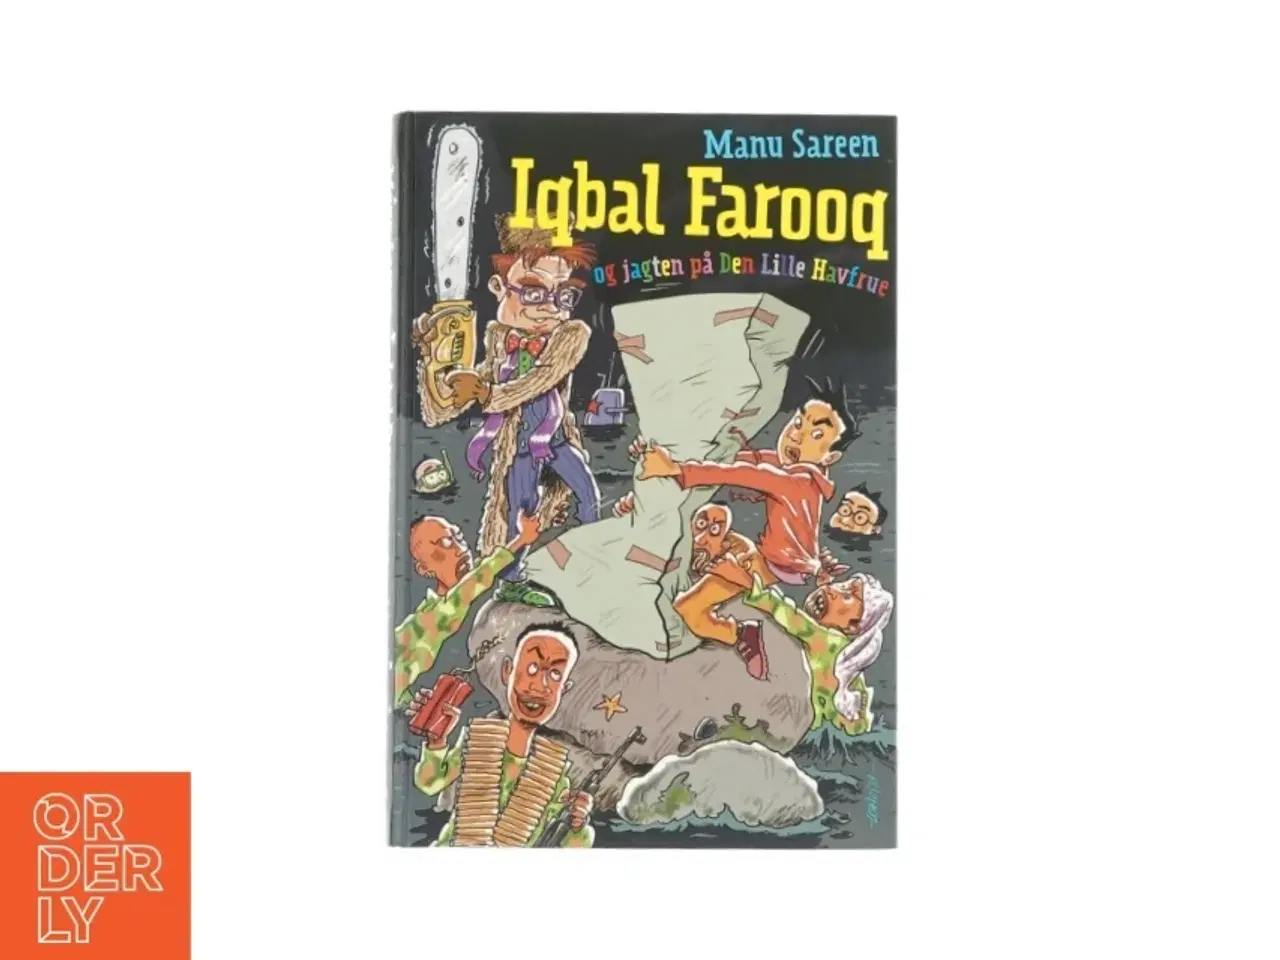 Billede 1 - Iqbal Farooq og jagten på Den Lille Havfrue af Manu Sareen (bog)